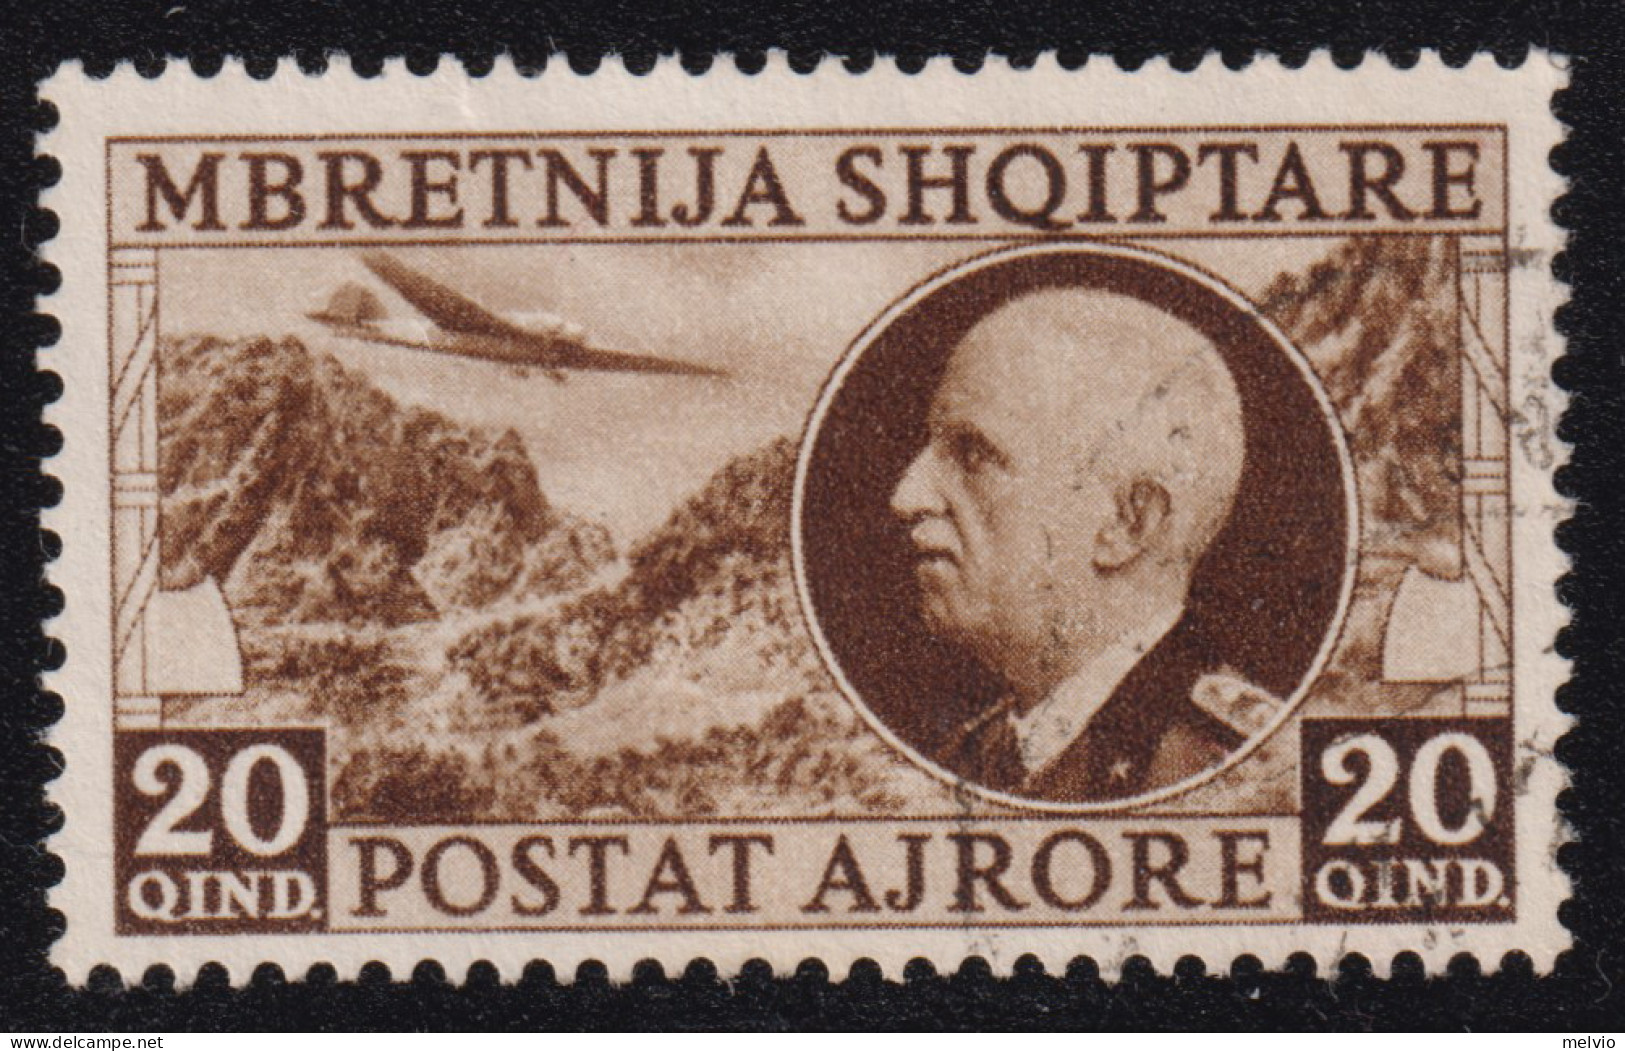 1939-Albania Occupazione Italiana (O=used) Posta Aerea 20q. (P.A. 4) - Albanie